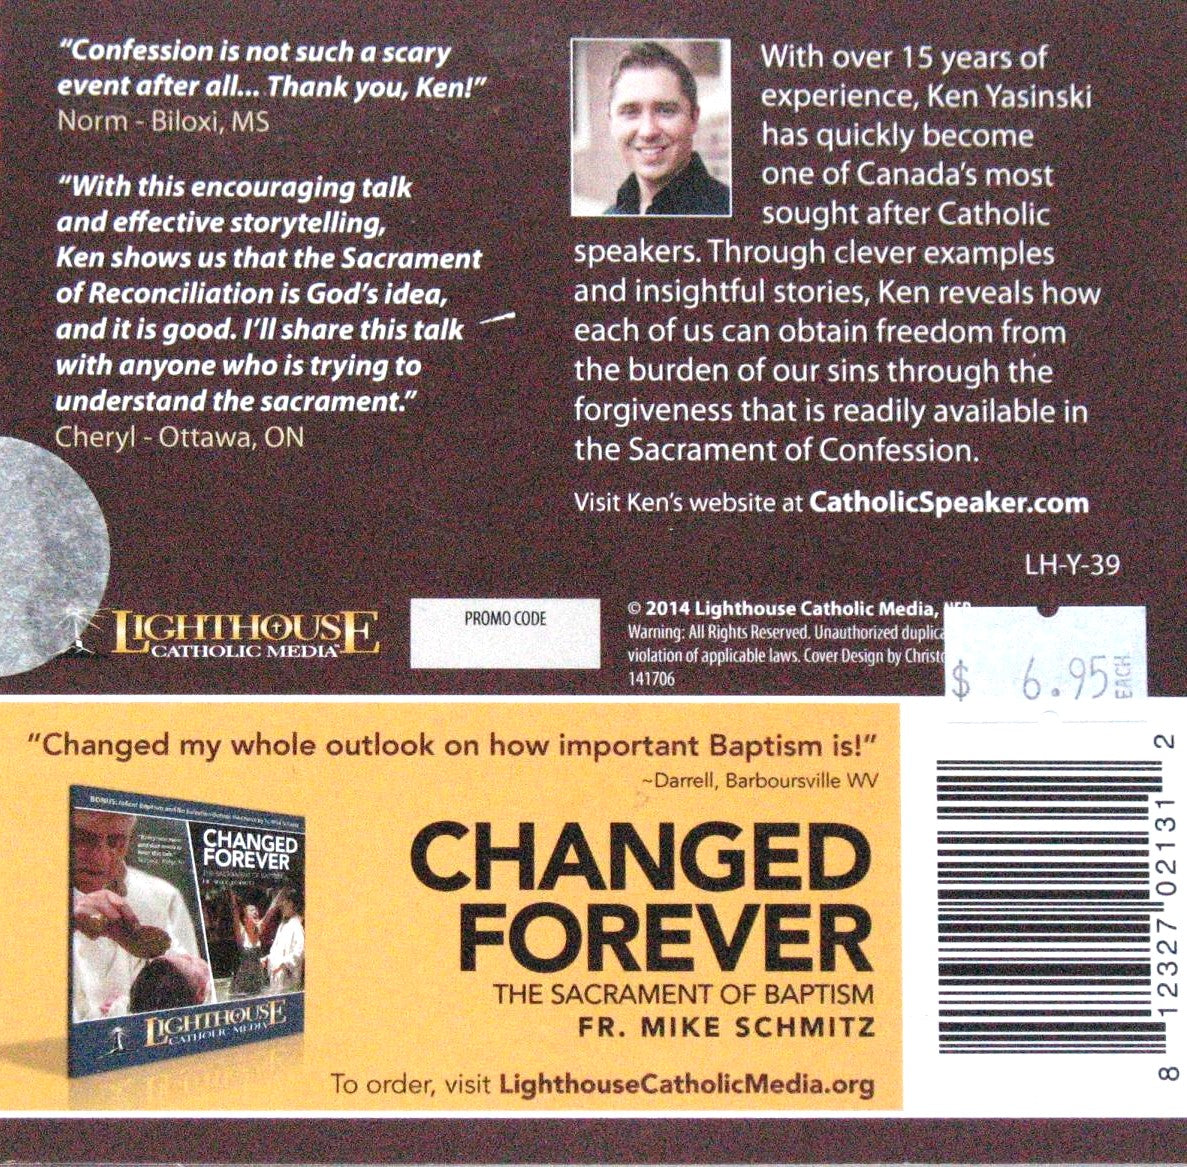 Freedom Through Forgiveness : The Sacrament of Confession - CD Talk by Ken Yasinski